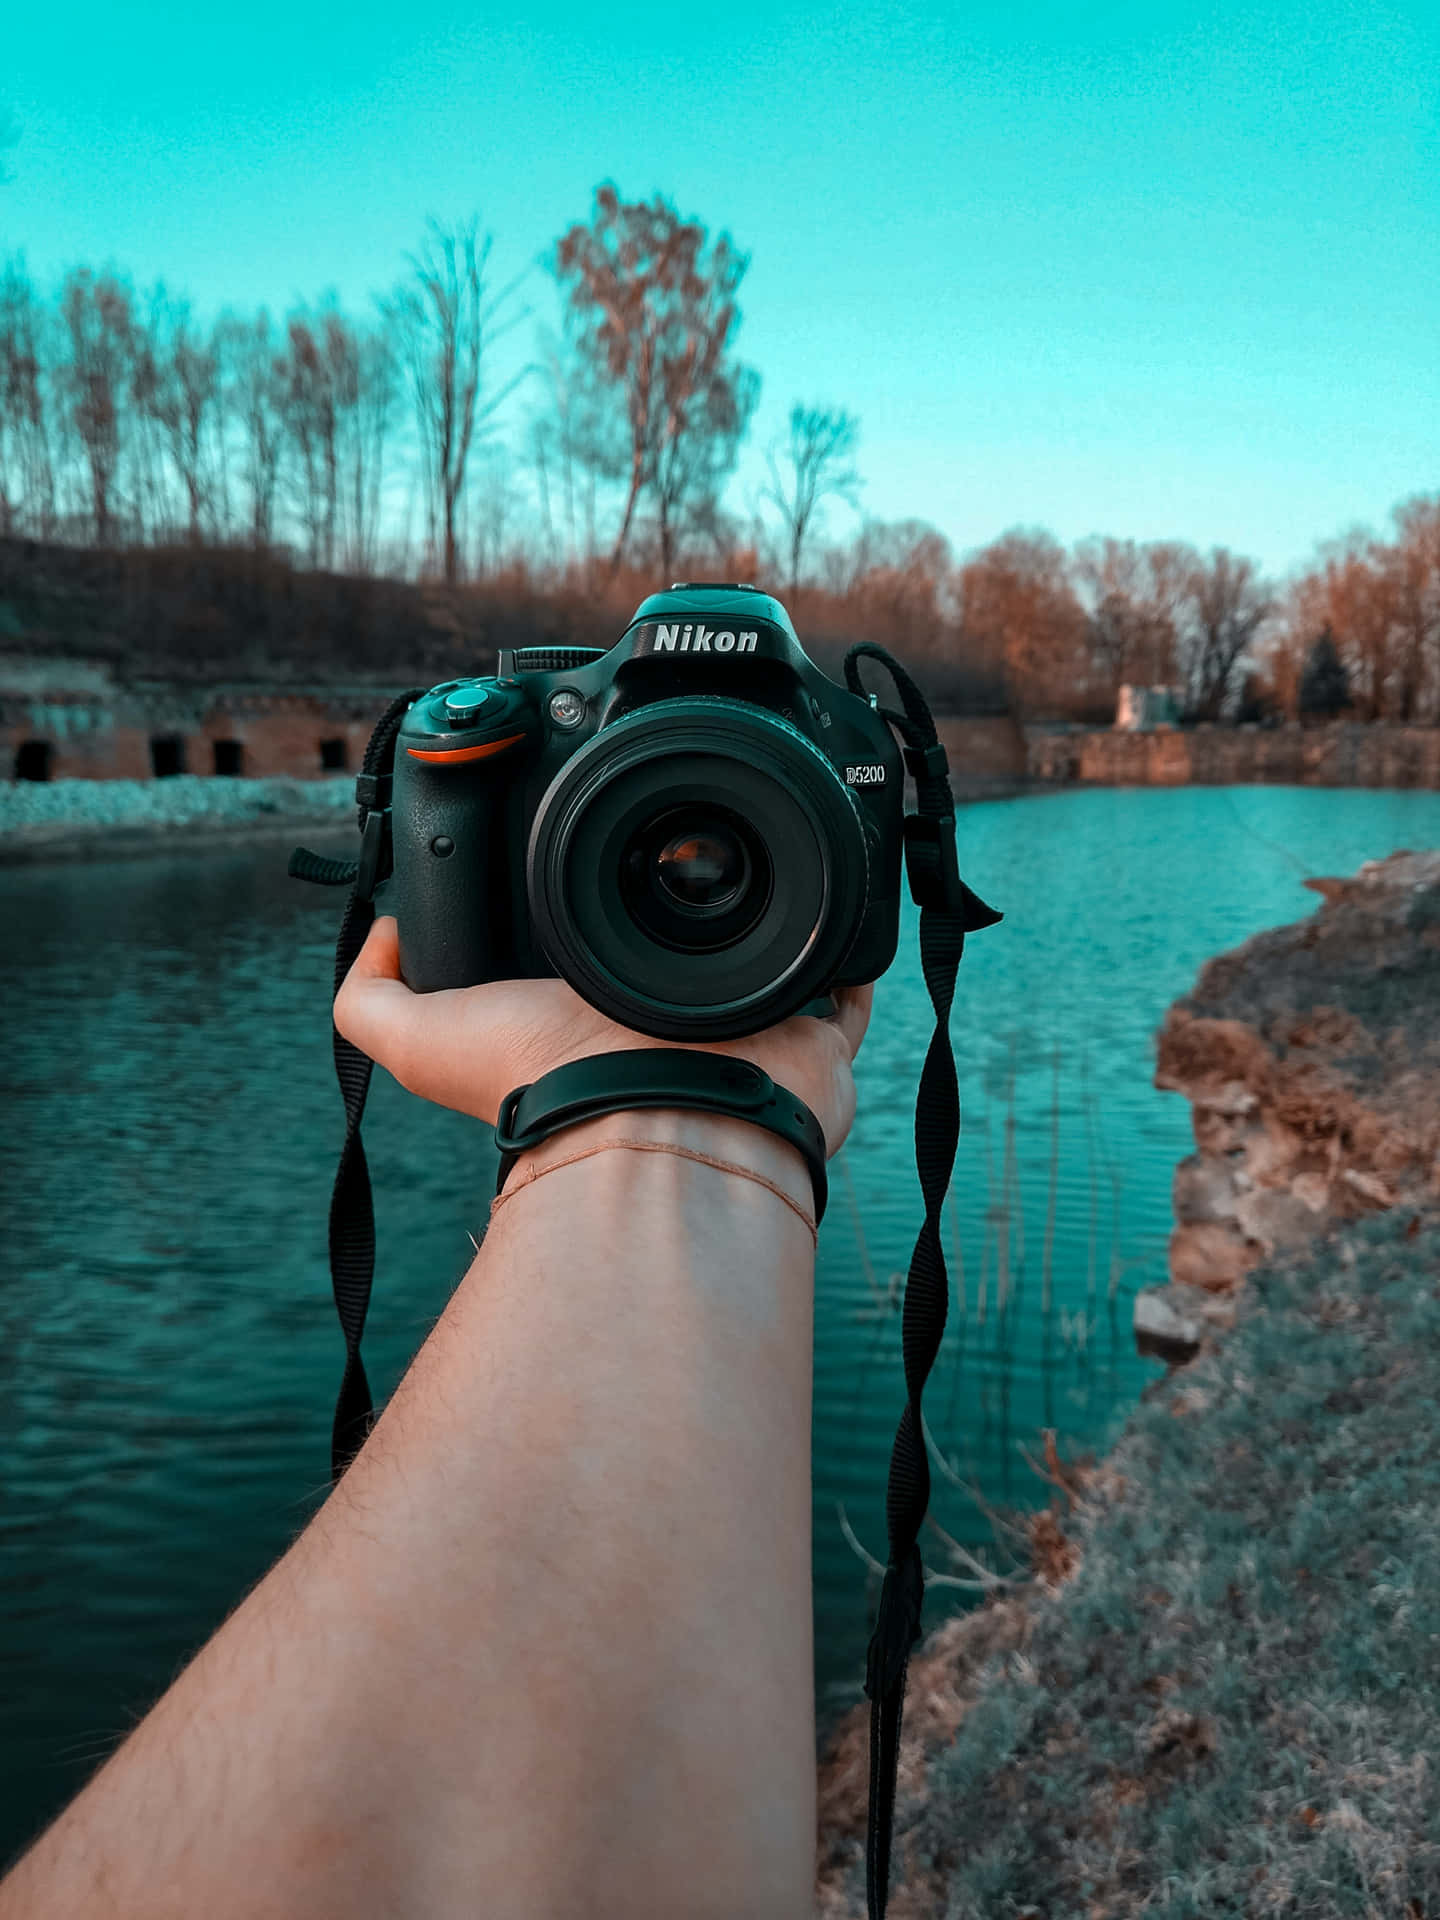 Nikon D5100 Dslr Near A River Background